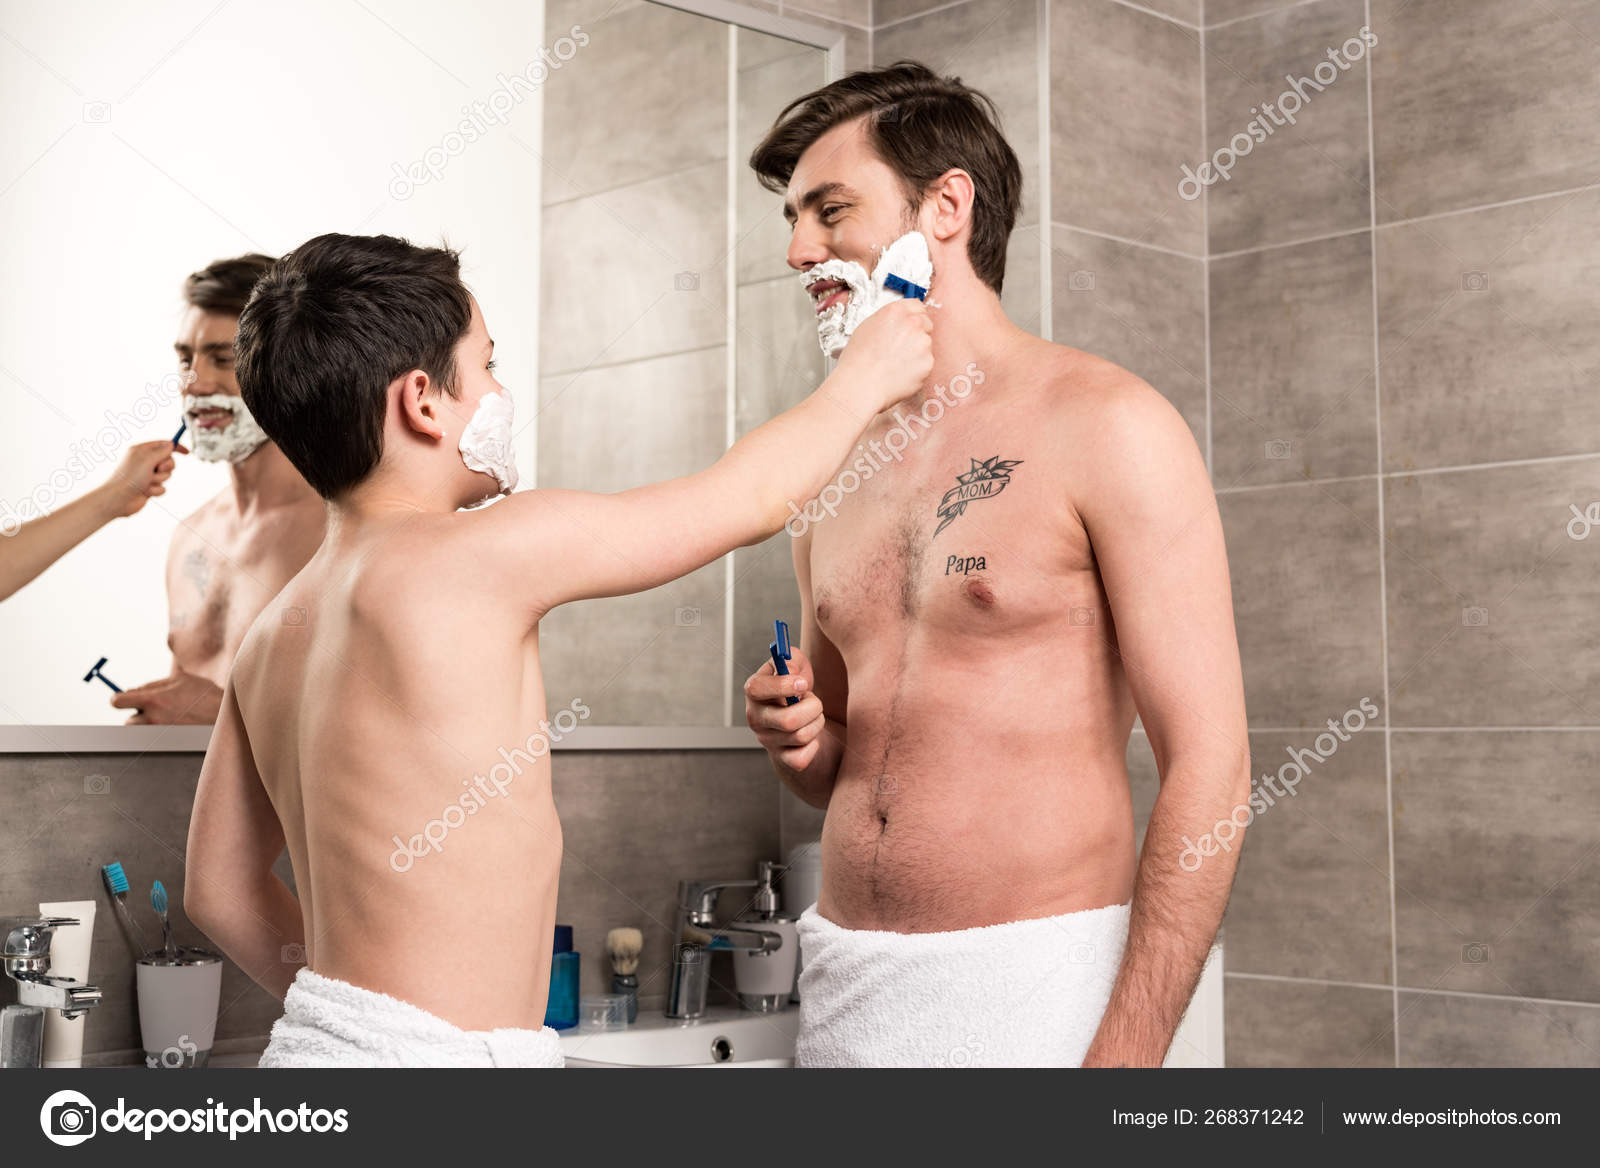 Мужчины бреет видео. Бритье подростка. Выбритый парень бреется. Парень подросток бреется. Процесс бритья.